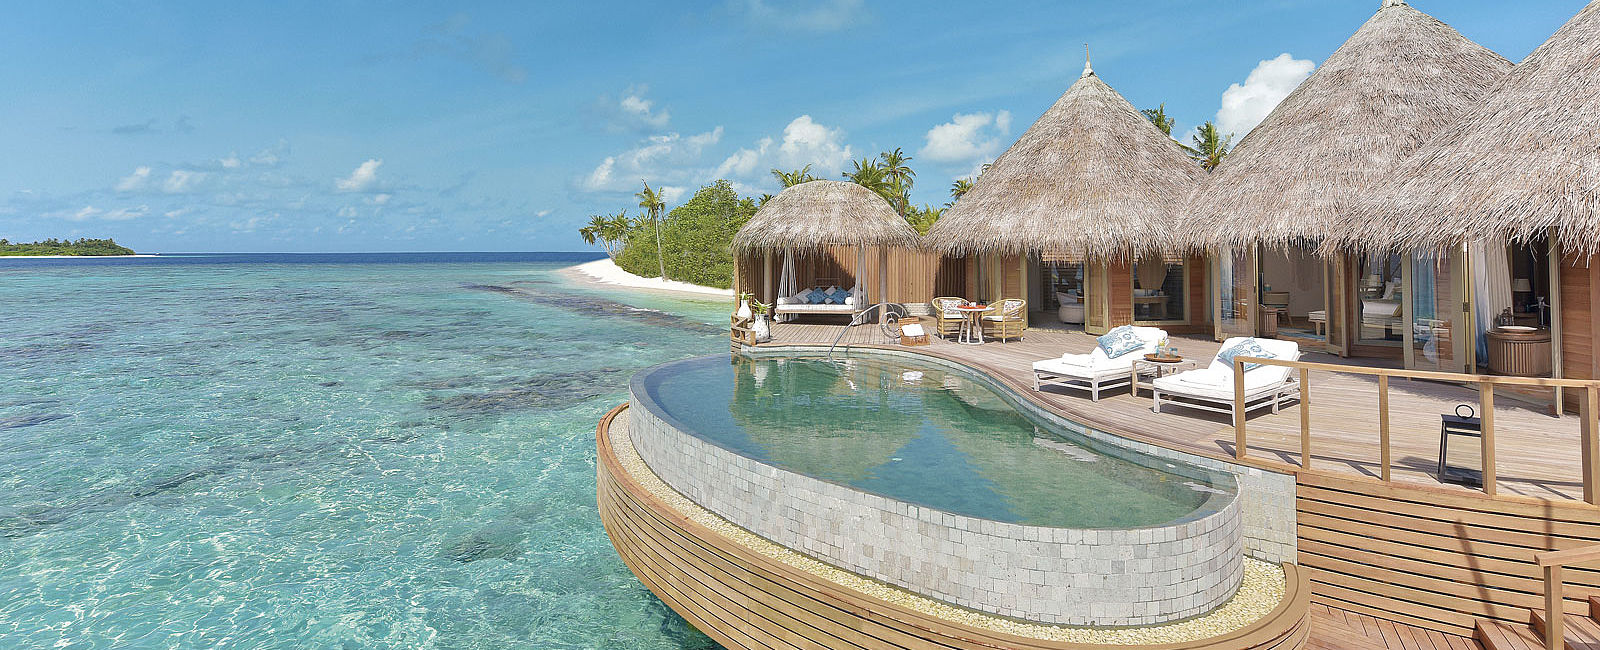 HOTEL TIPPS
 The Nautilus Maldives, Malediven 
 Grenzenlose Freiheit 